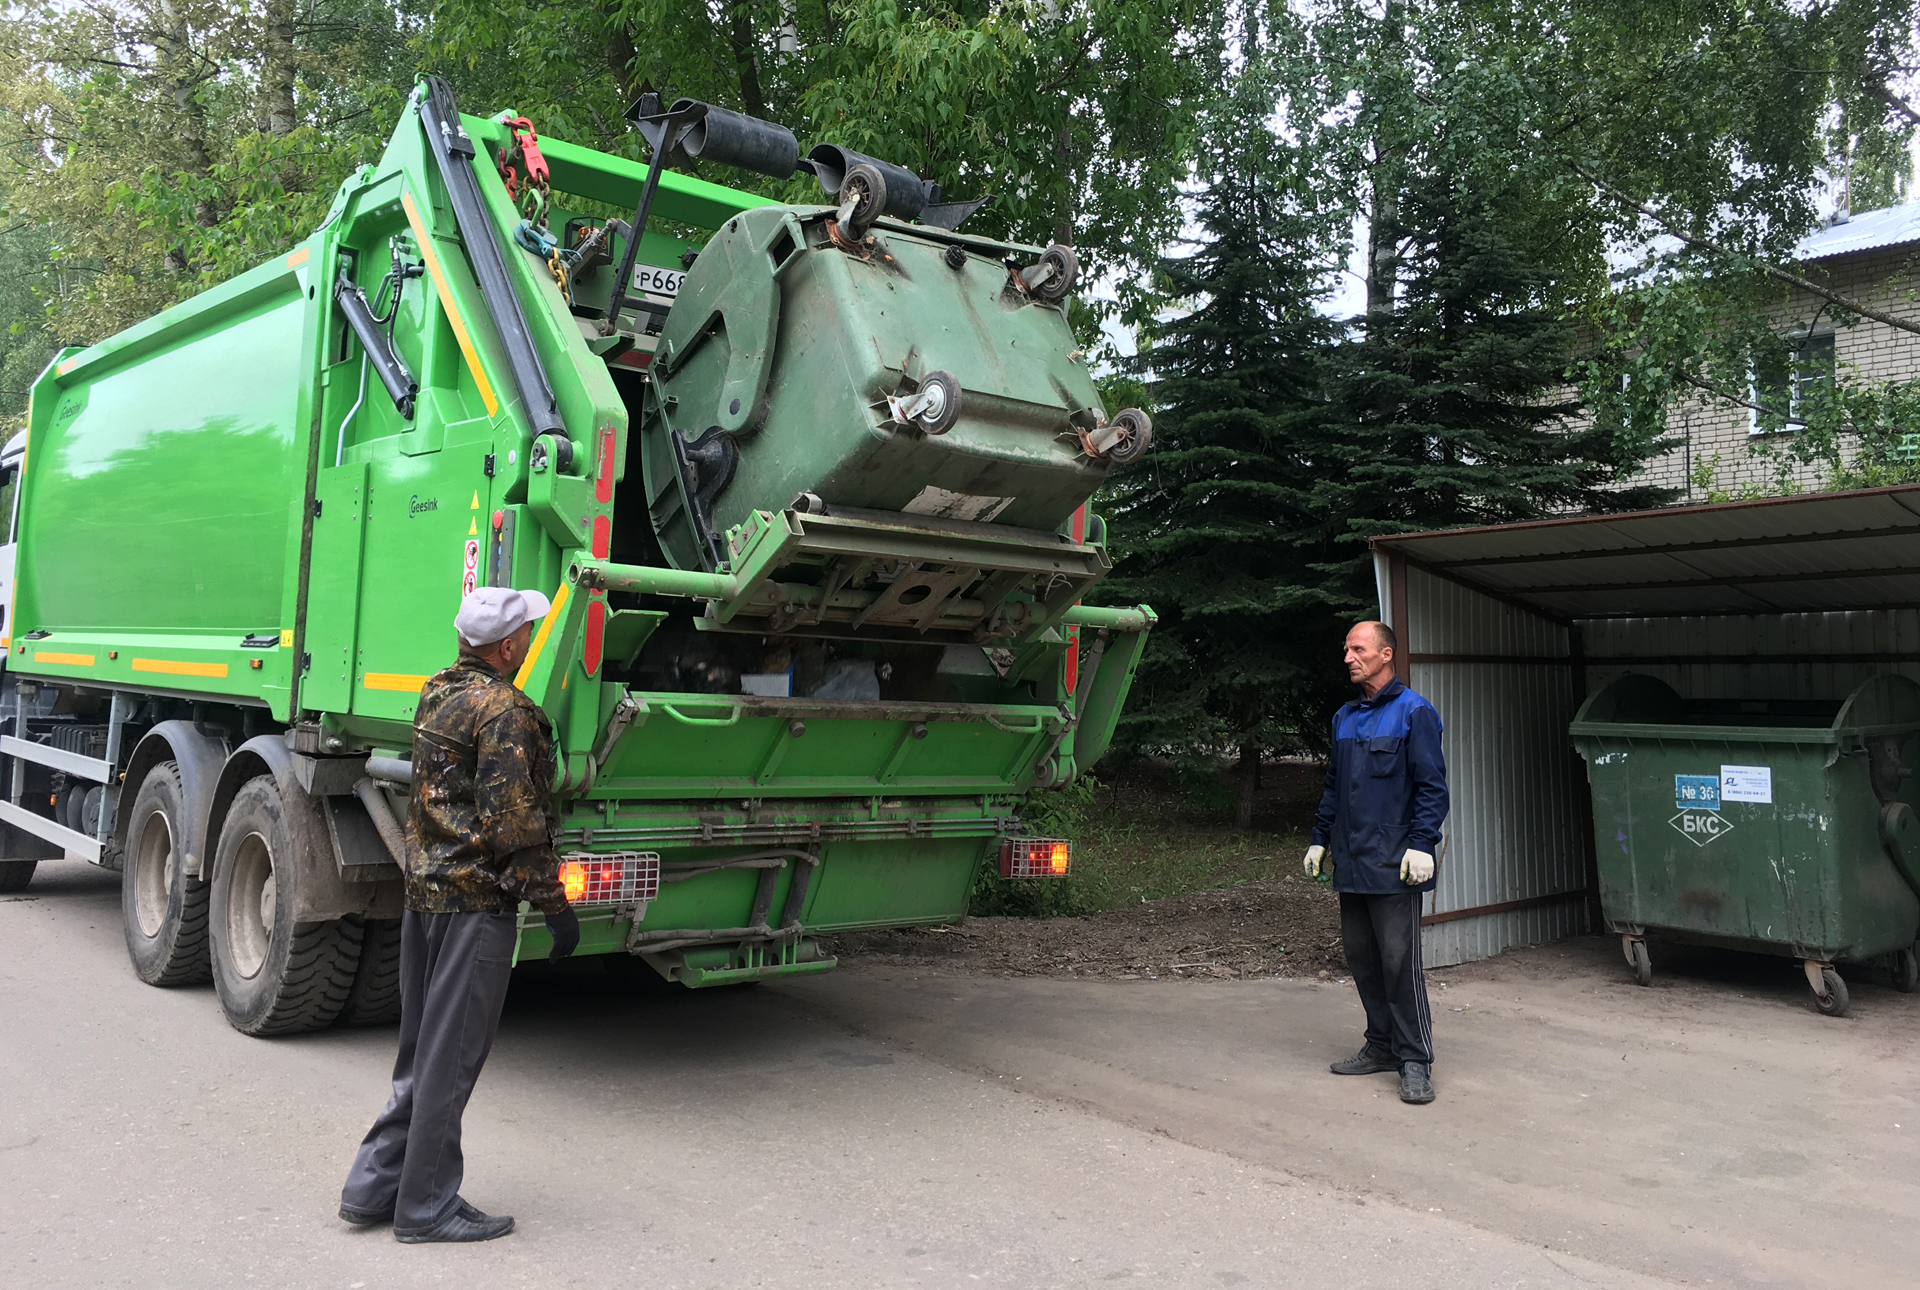 Снижен предельный размер платы за вывоз мусора в Нижегородской области